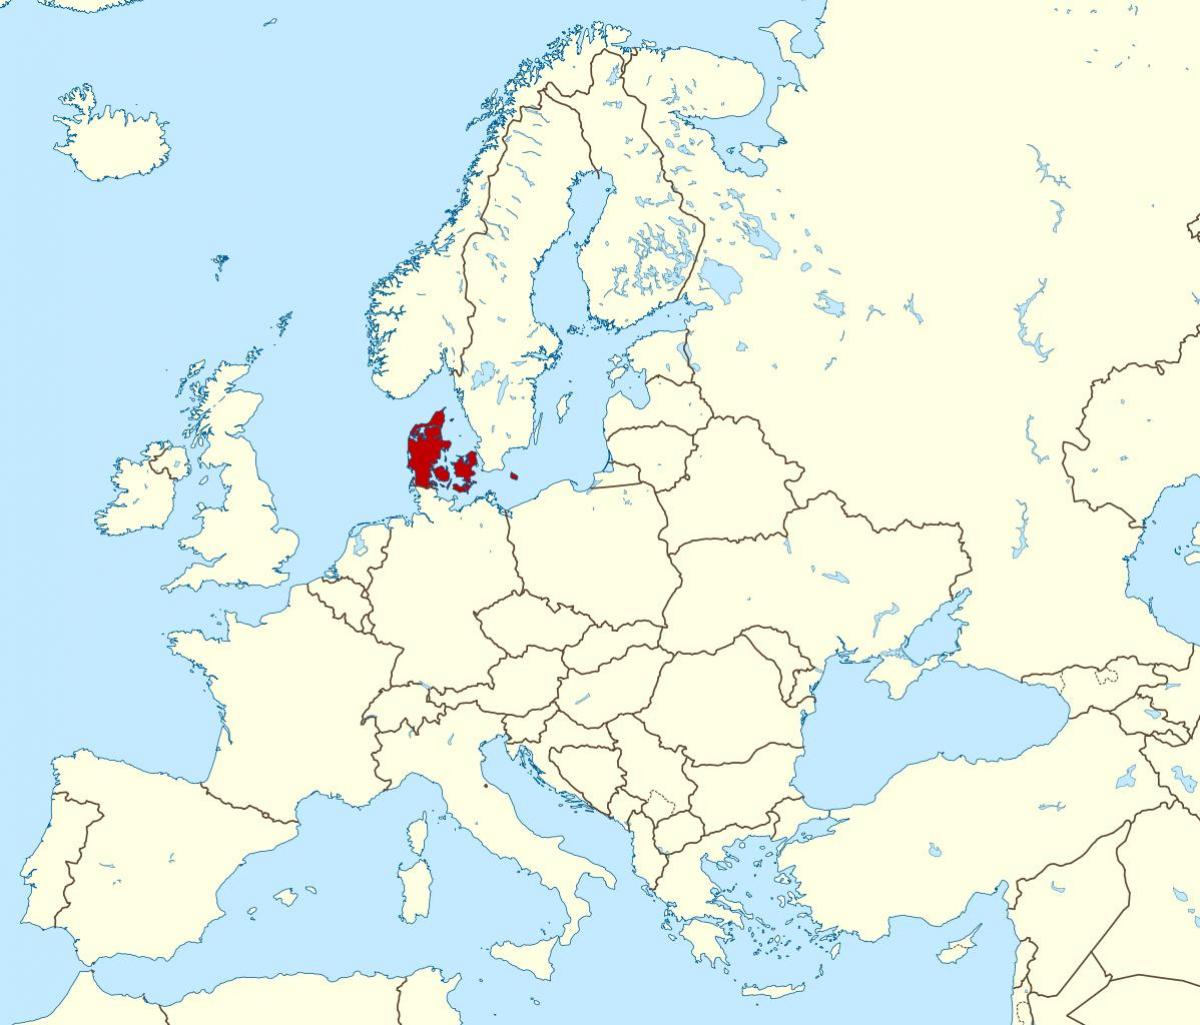 Mapa dánska místo na světě 